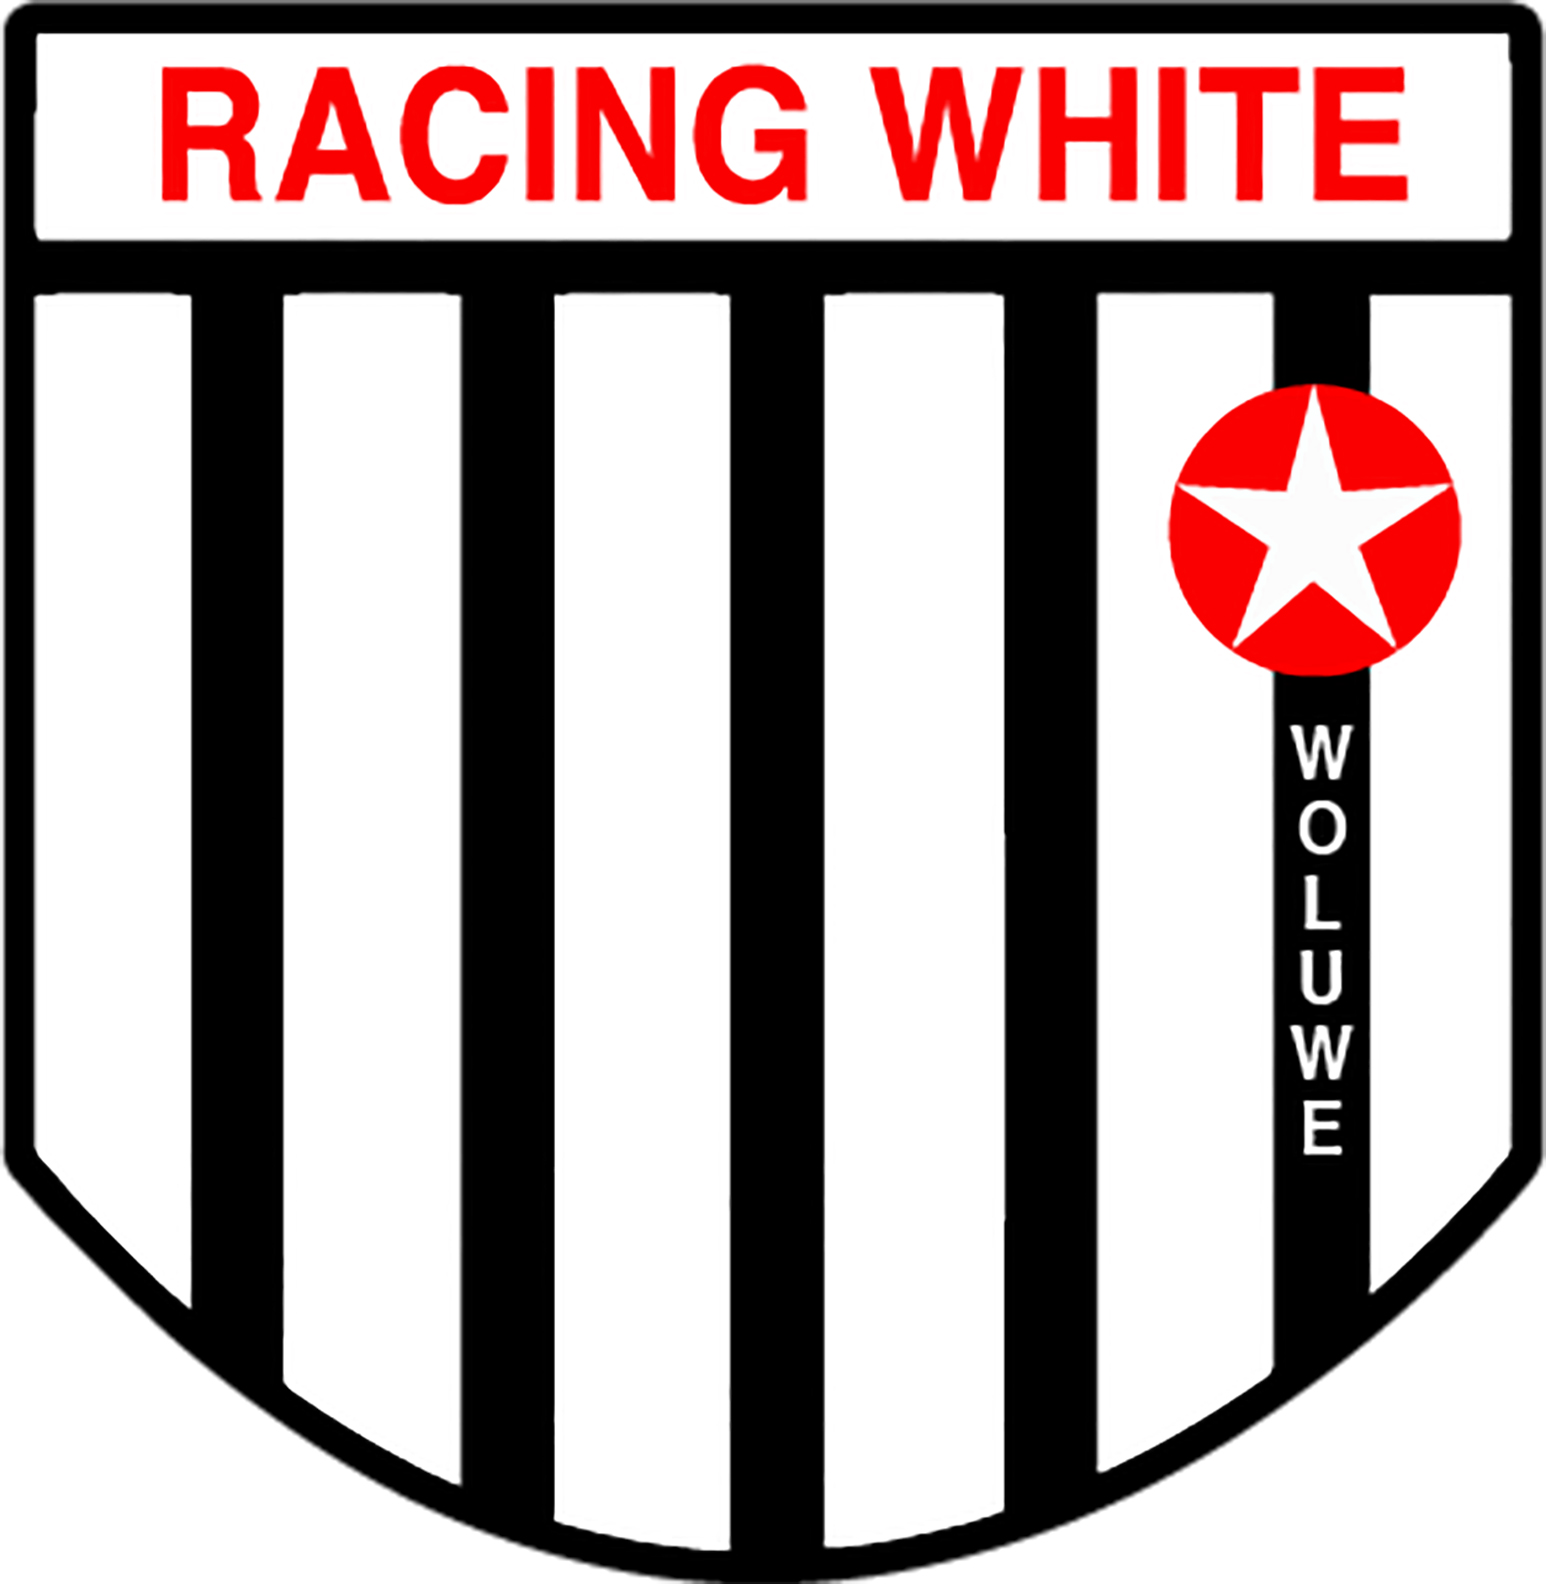 1 - Racing White Woluwe B